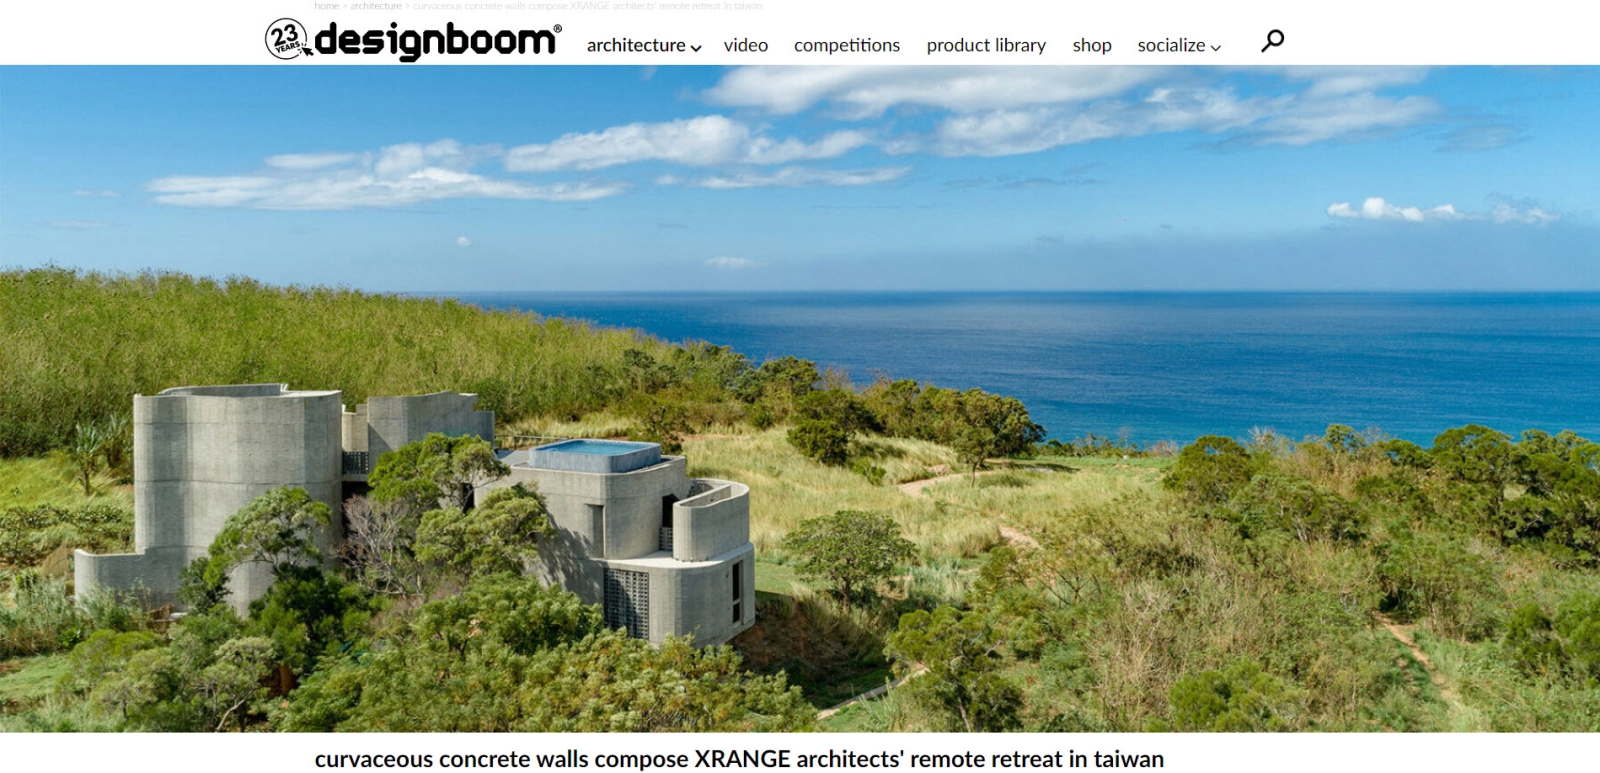 Italian website designboom reported the Wandering Walls